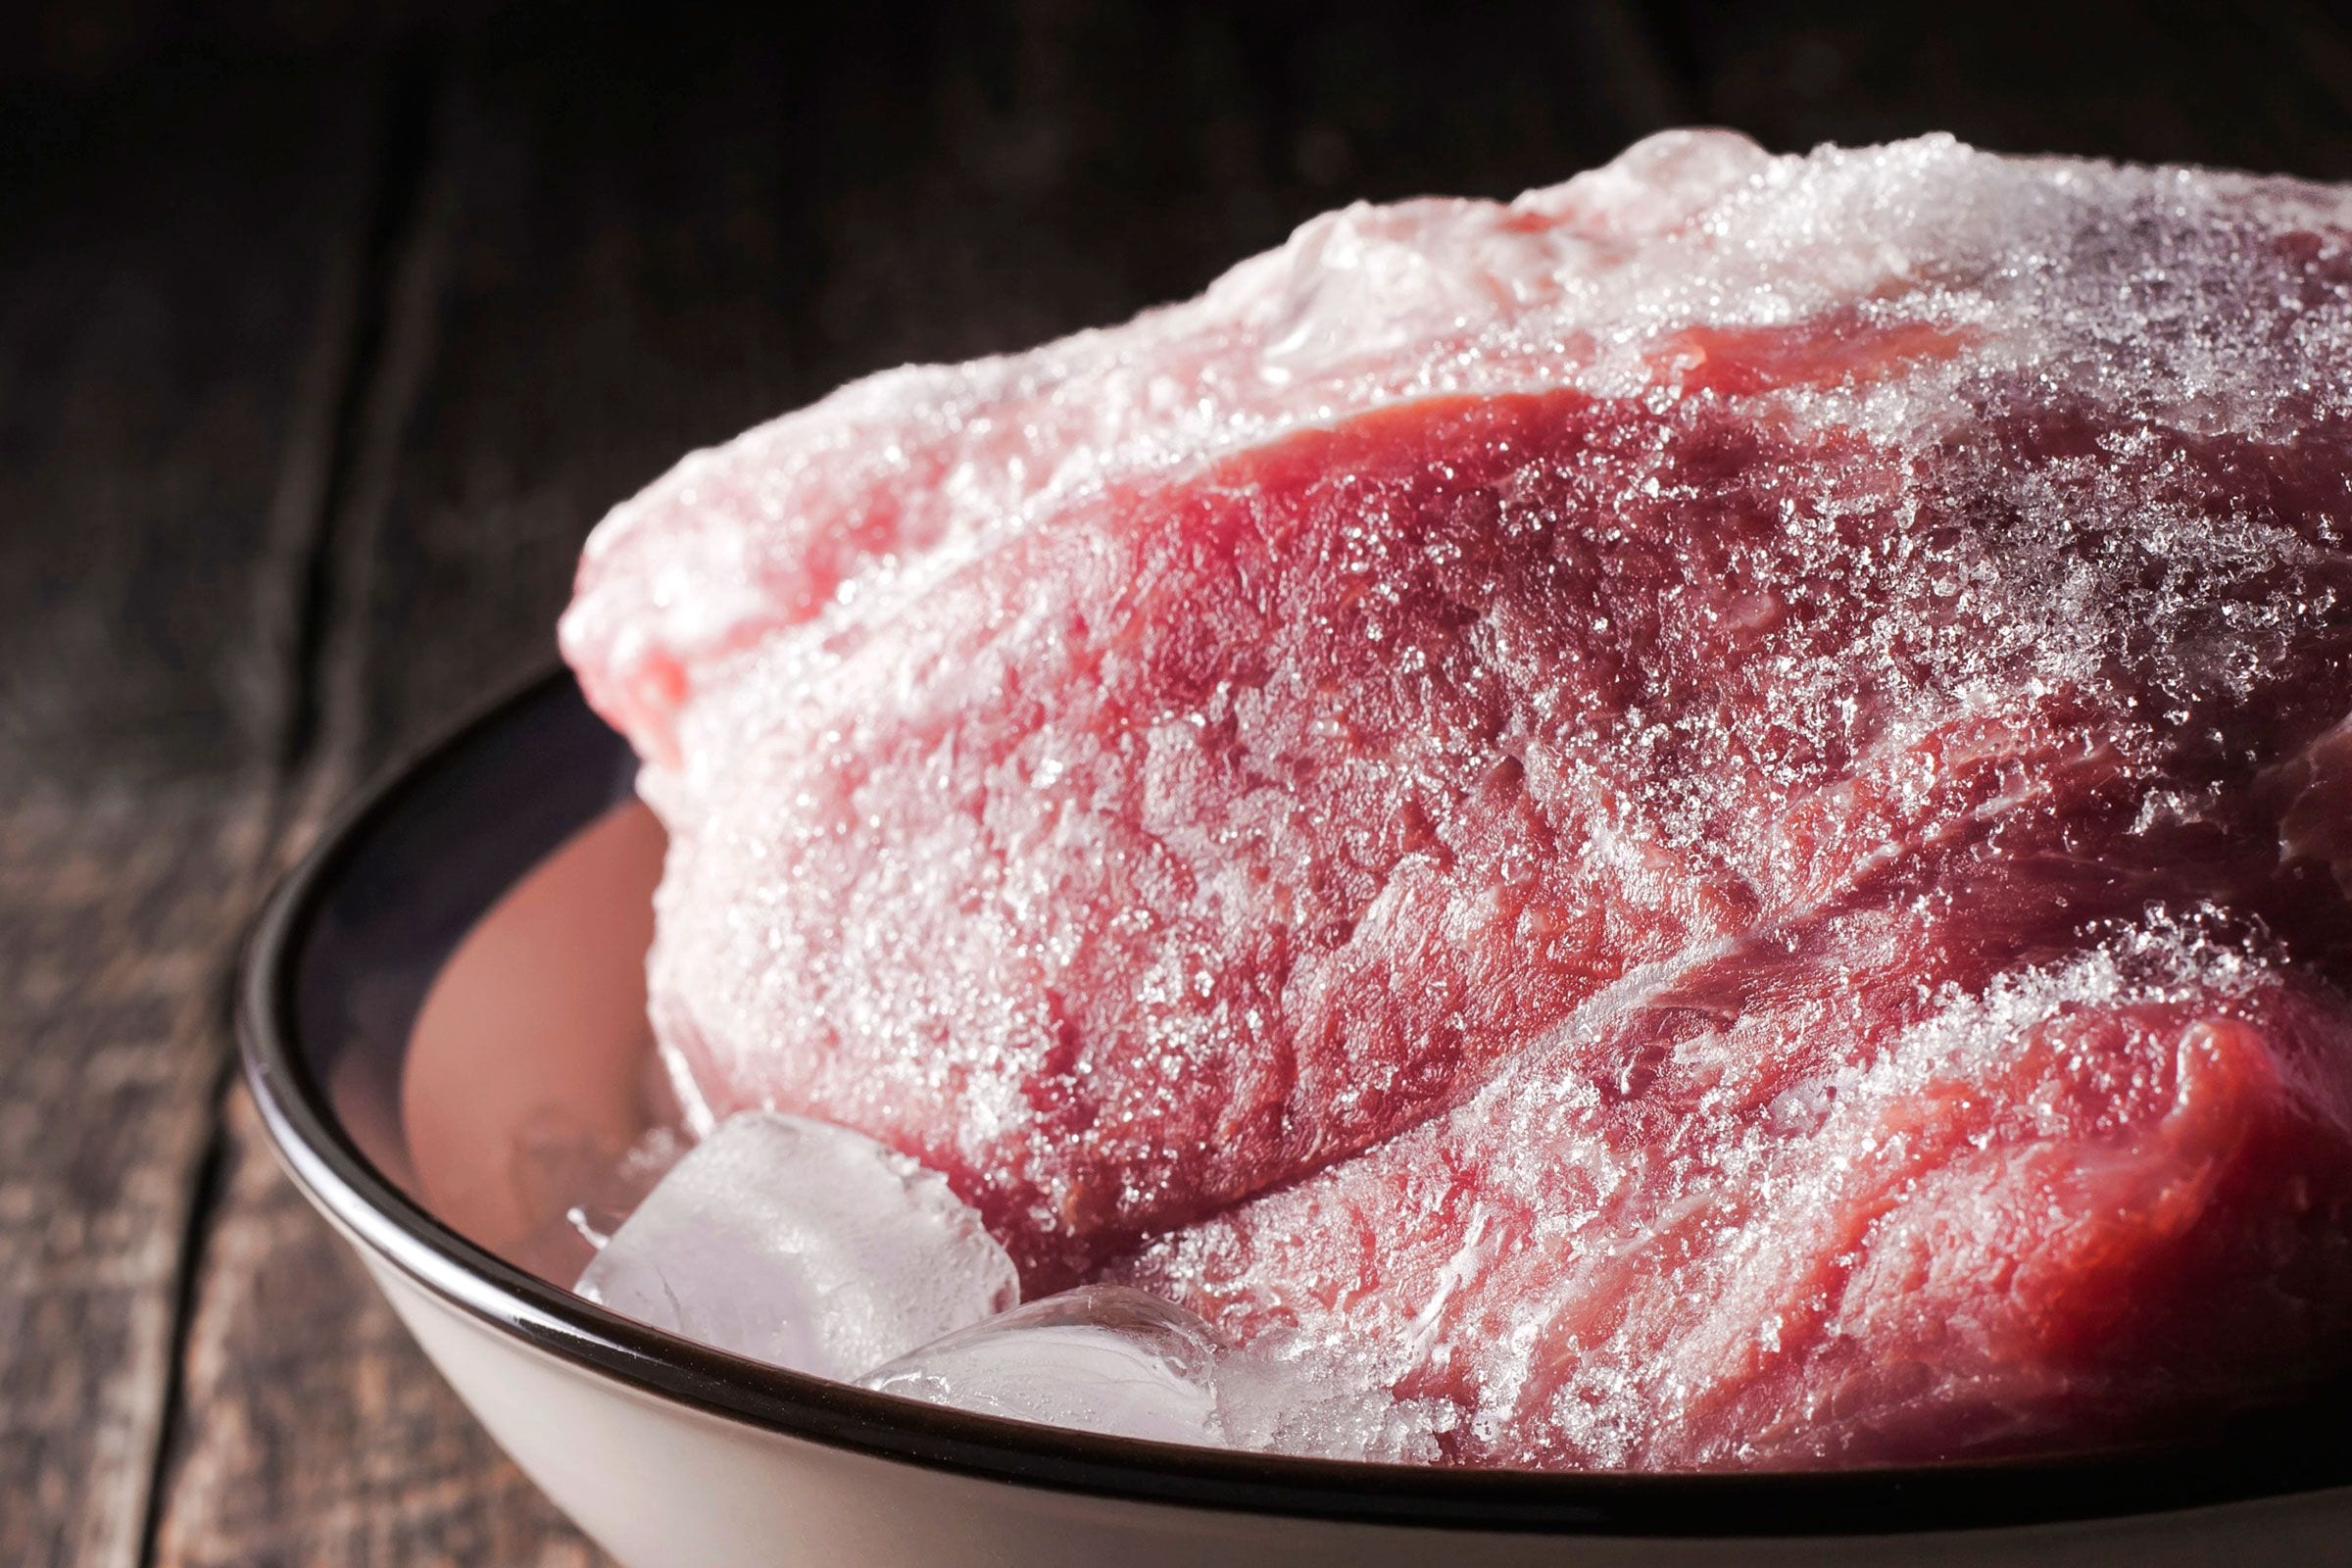 Как быстро и безопасно разморозить мясо в домашних условиях